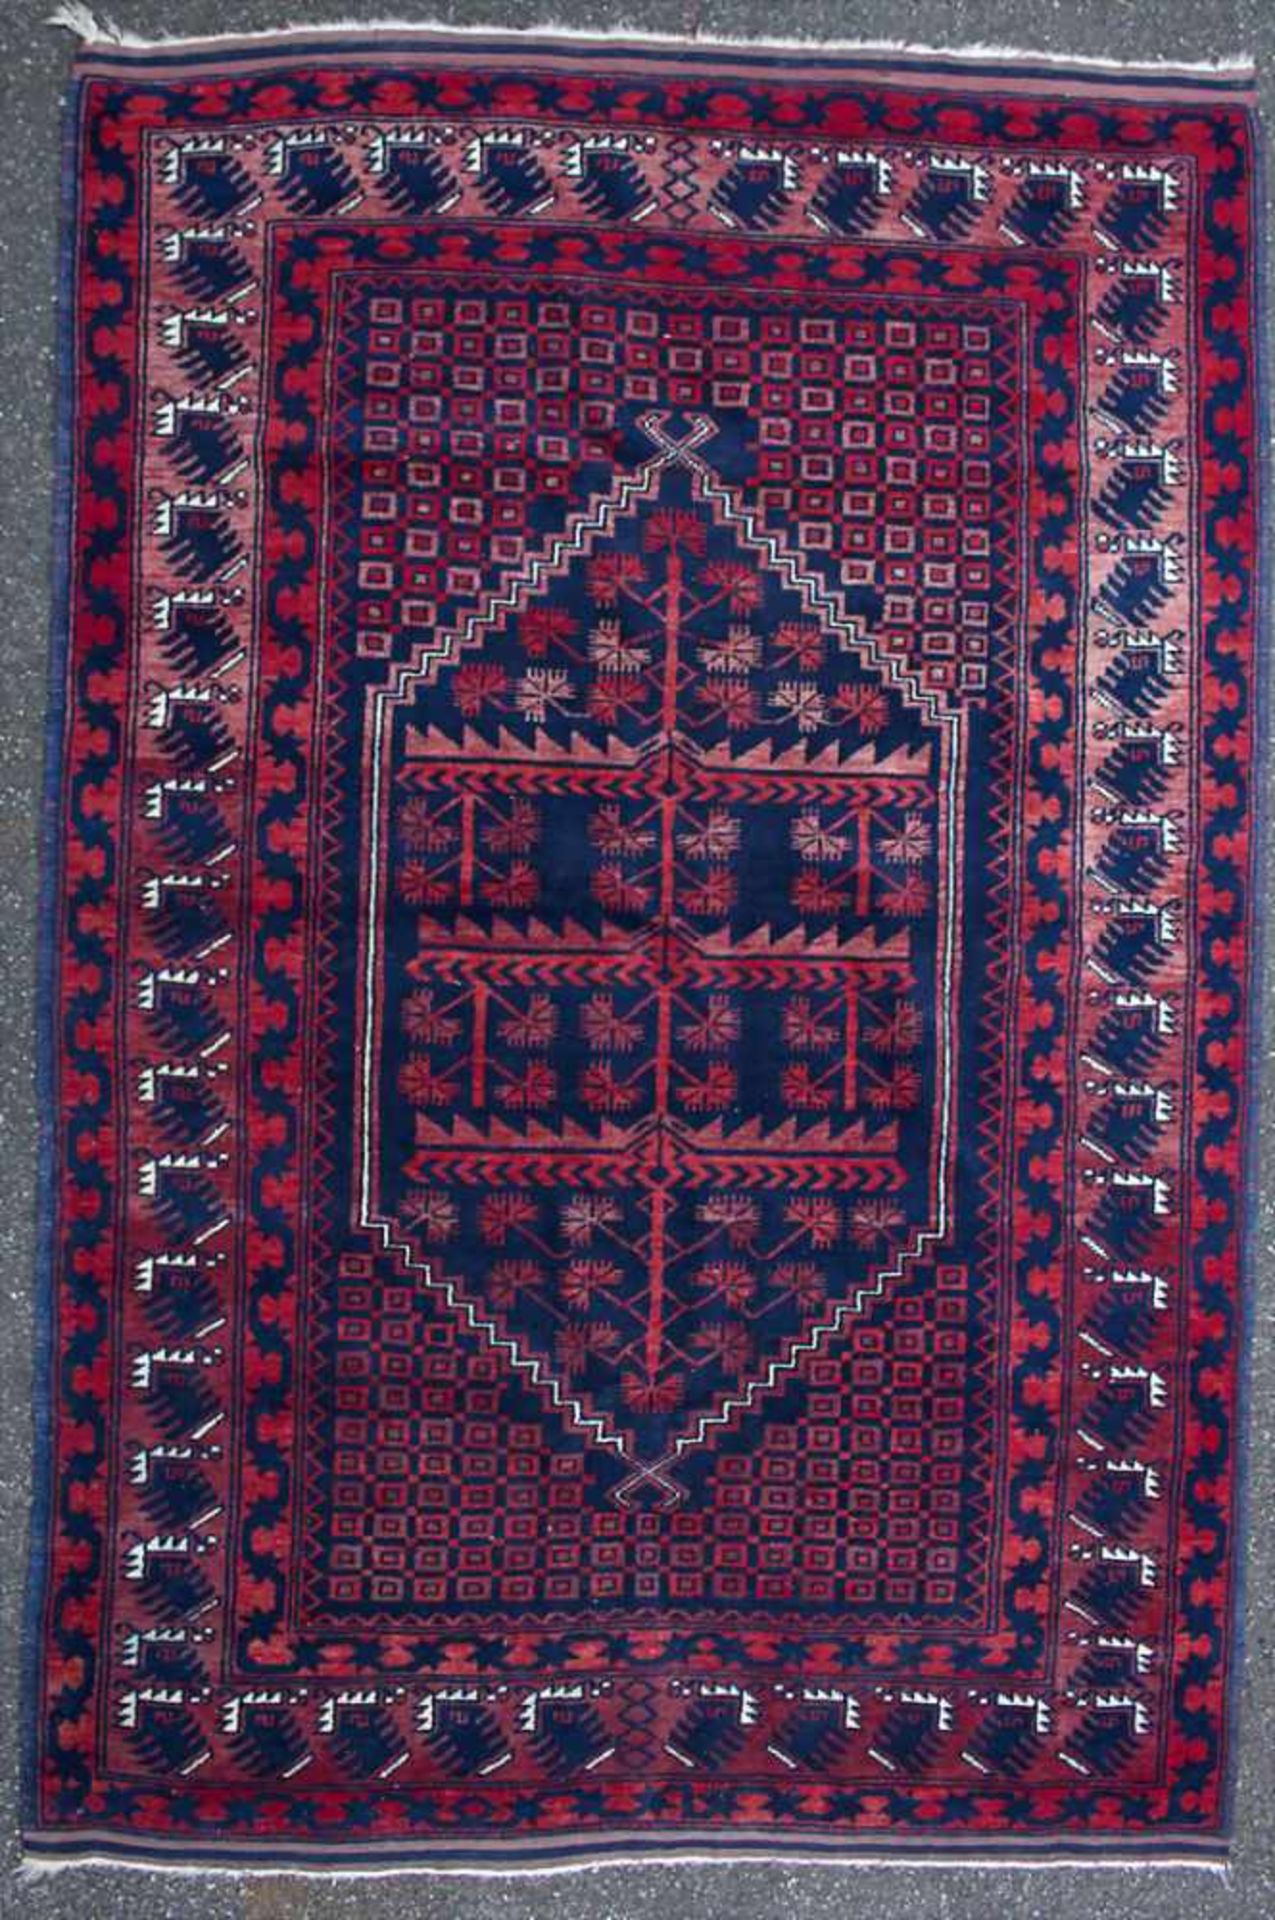 Orientteppich / An oriental carpetMaterial: Wolle auf Wolle, fein geknüpft, Naturfarben,Maße: 180